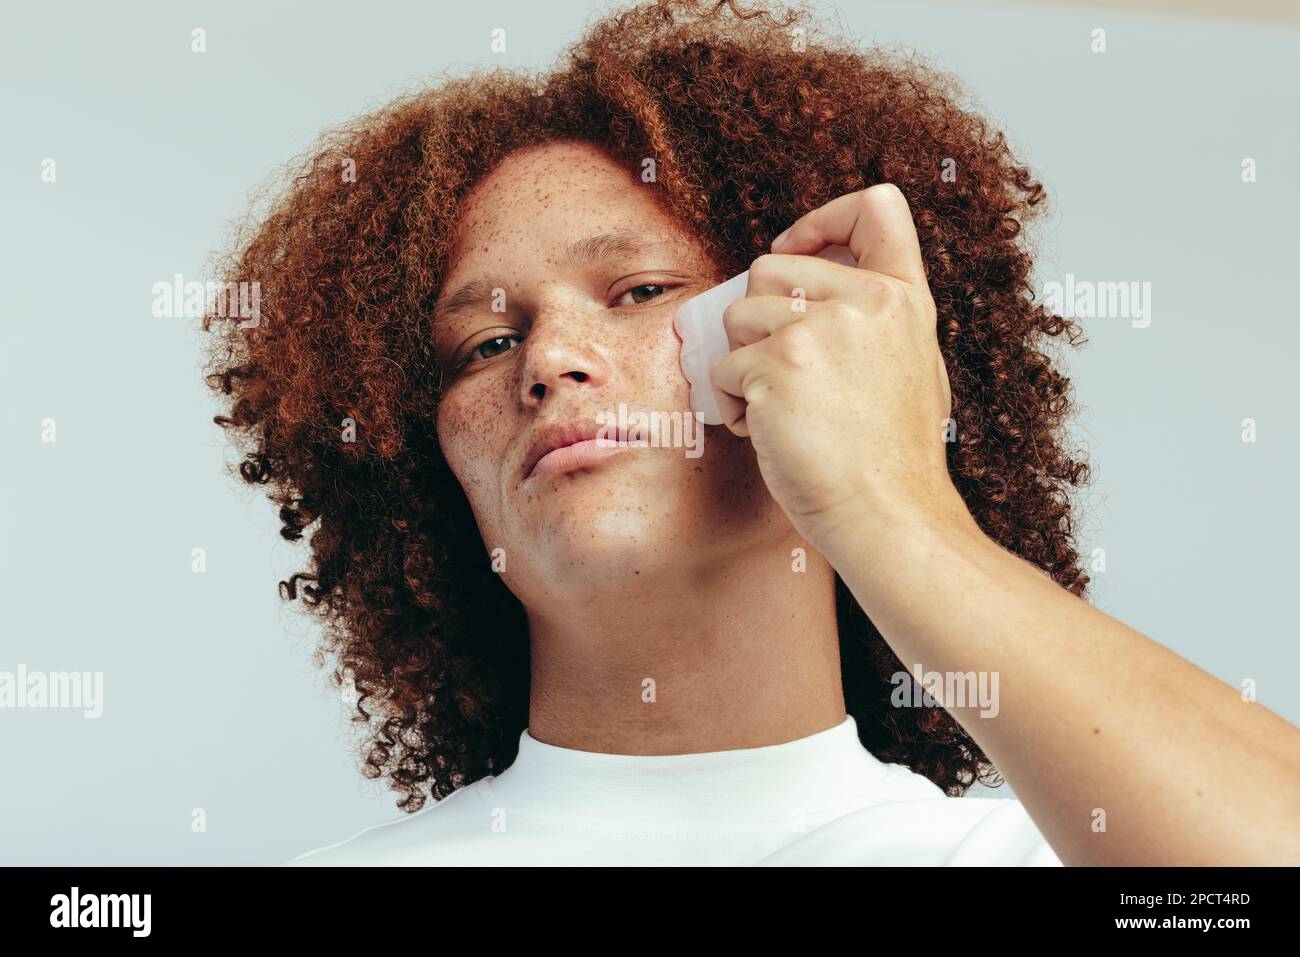 Ein junger Mann, der sein Gesicht mit einem Gua-sha-Stein massiert, um Schwellungen zu reduzieren und sein Aussehen zu verbessern, bringt seine Pflege auf ein neues Niveau. Mann mit fr Stockfoto